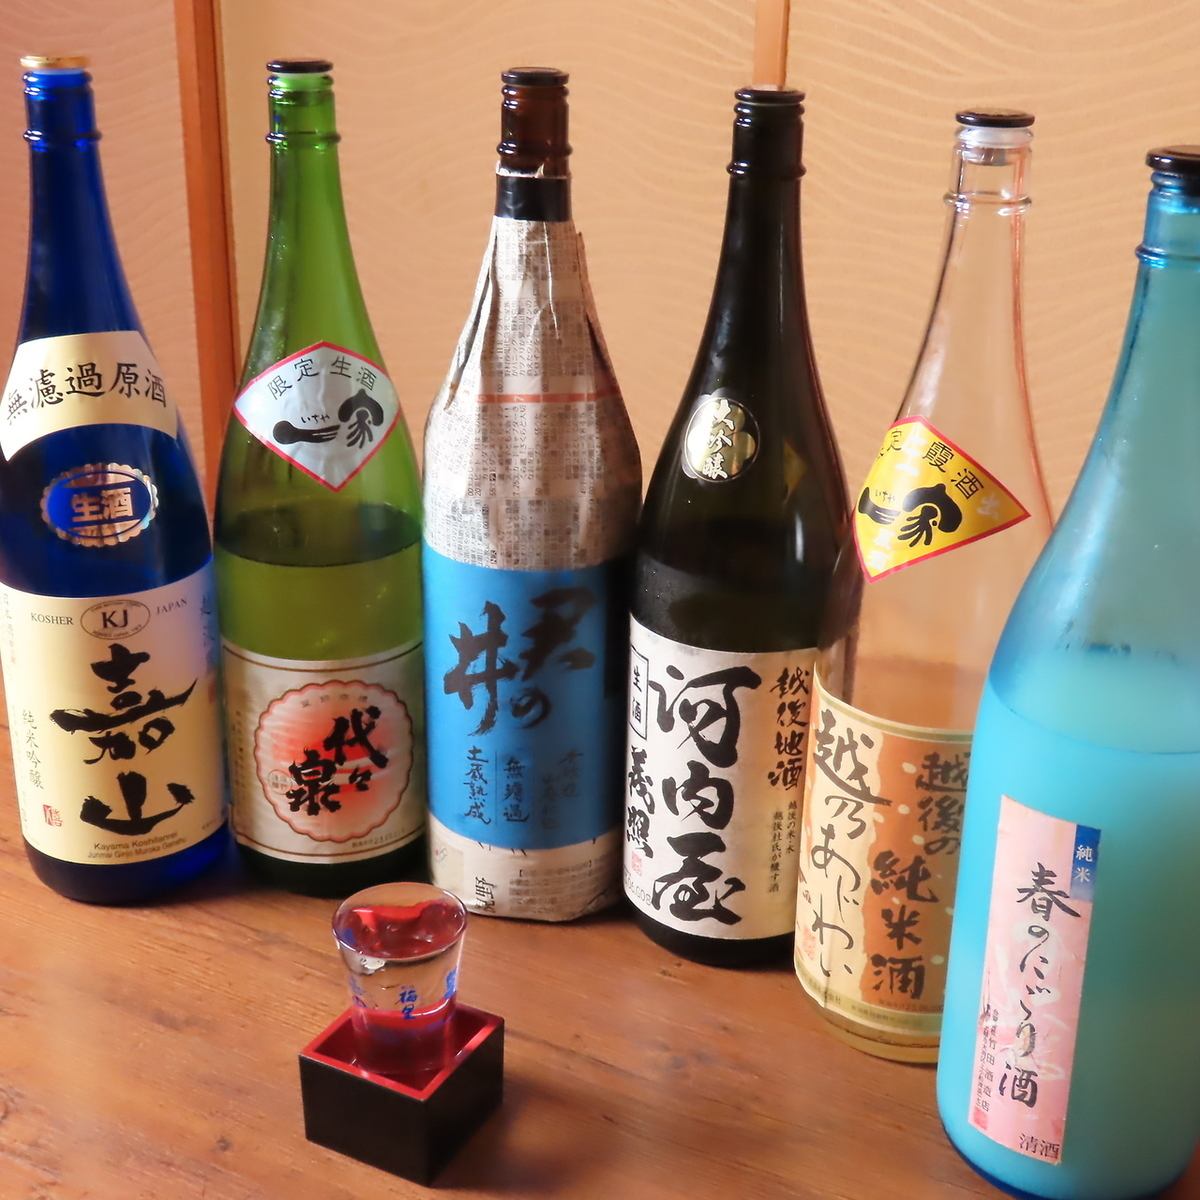 说到鱼类菜肴，就不得不提日本酒了。常备有约30种新泻当地酒。